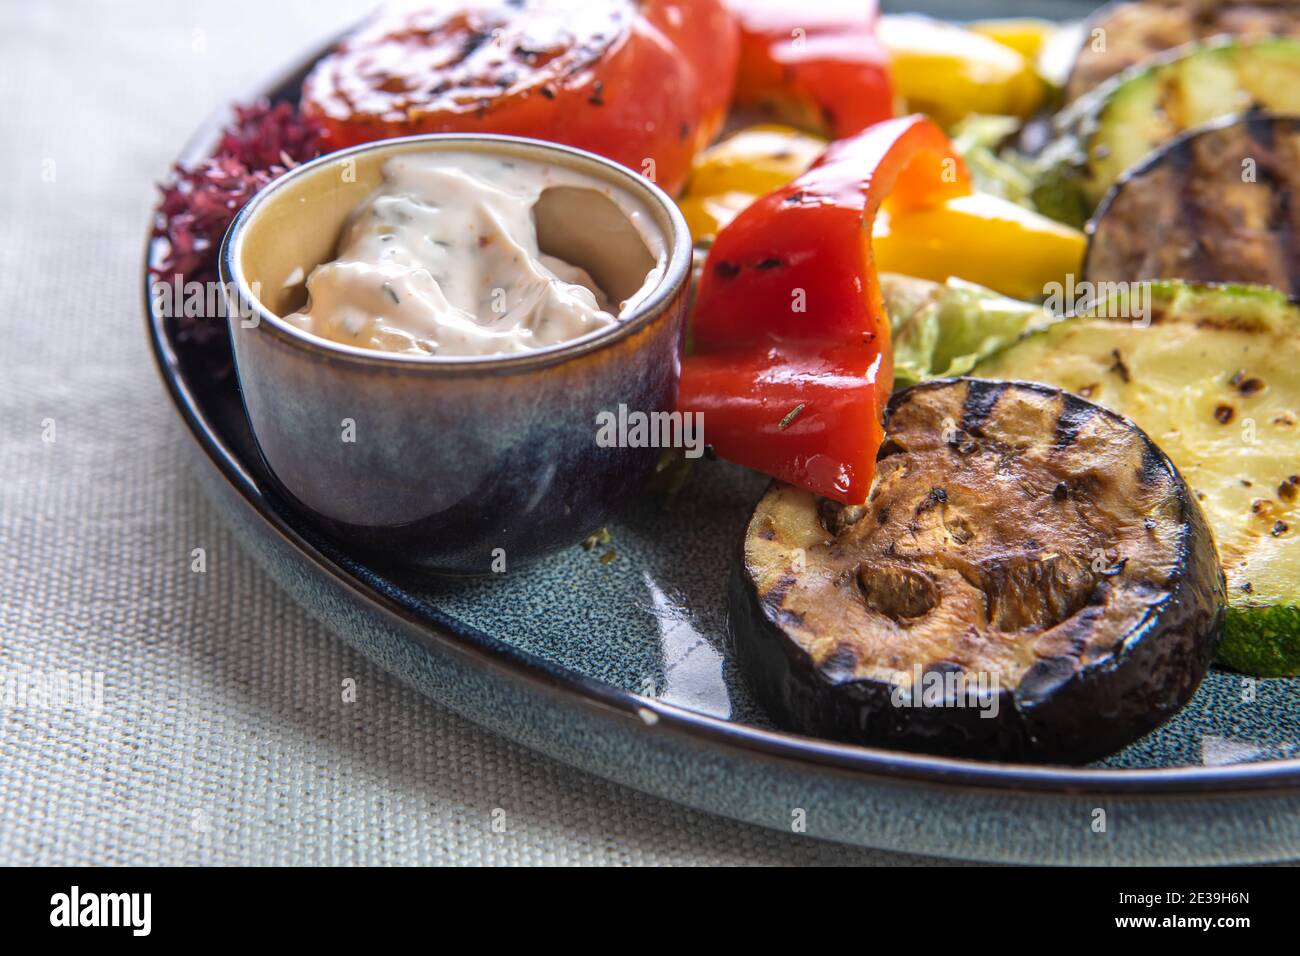 Verdure alla griglia: Melanzane, pomodori, peperoni e salsa su piatti su sfondo bianco isolato. Primo piano. Foto Stock